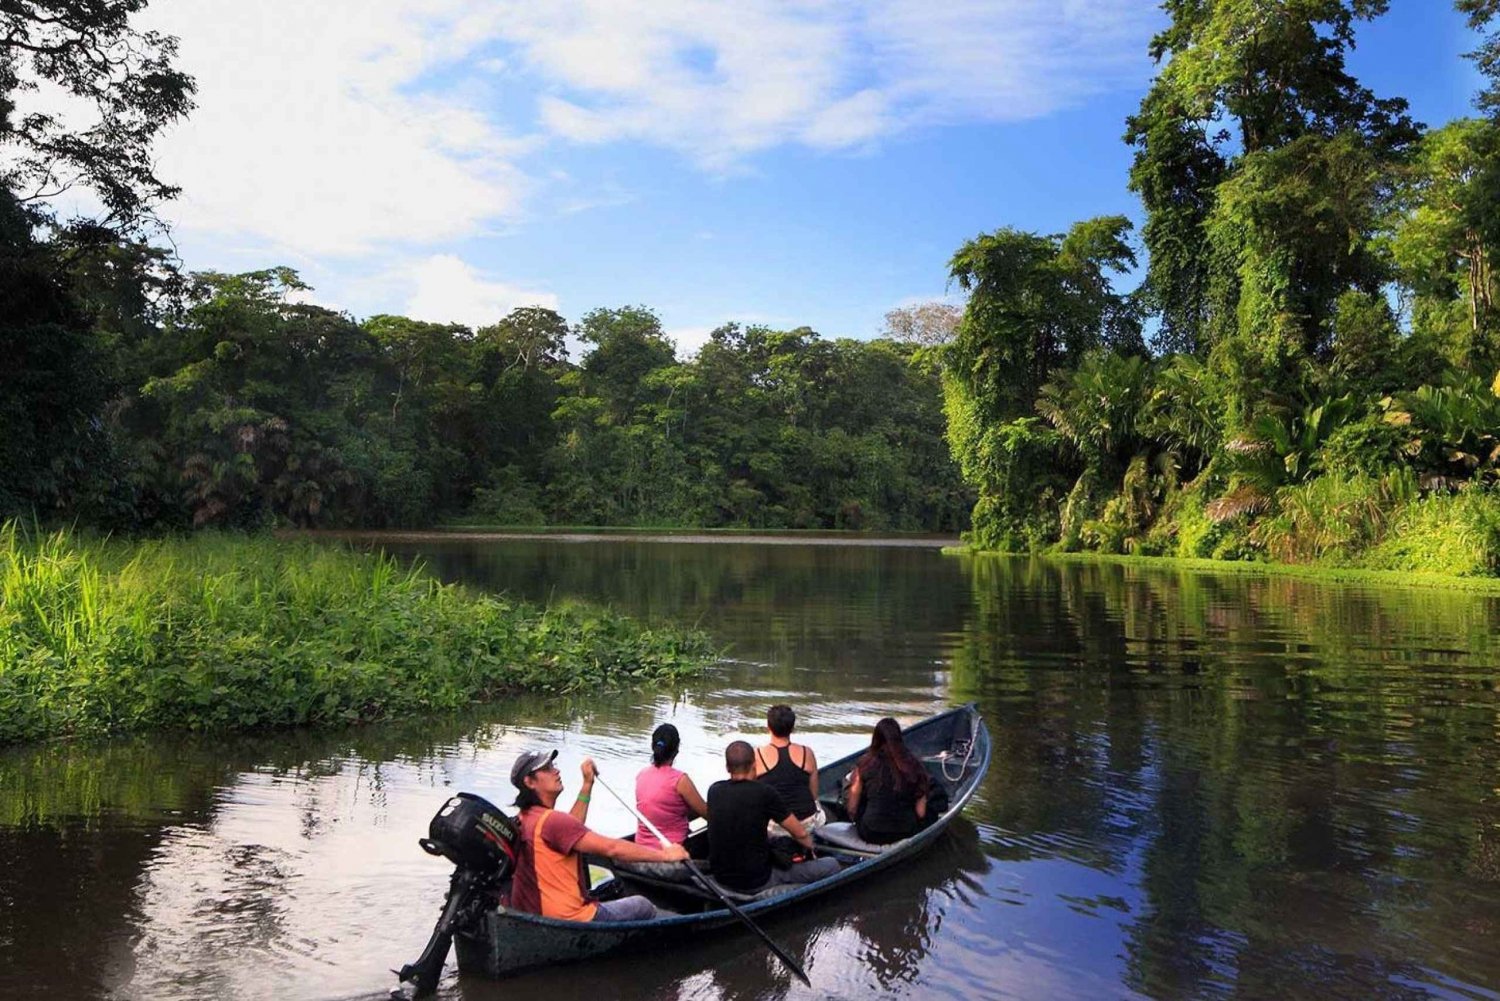 Tortuguero: Excursión en canoa por el Parque Nacional de Tortuguero